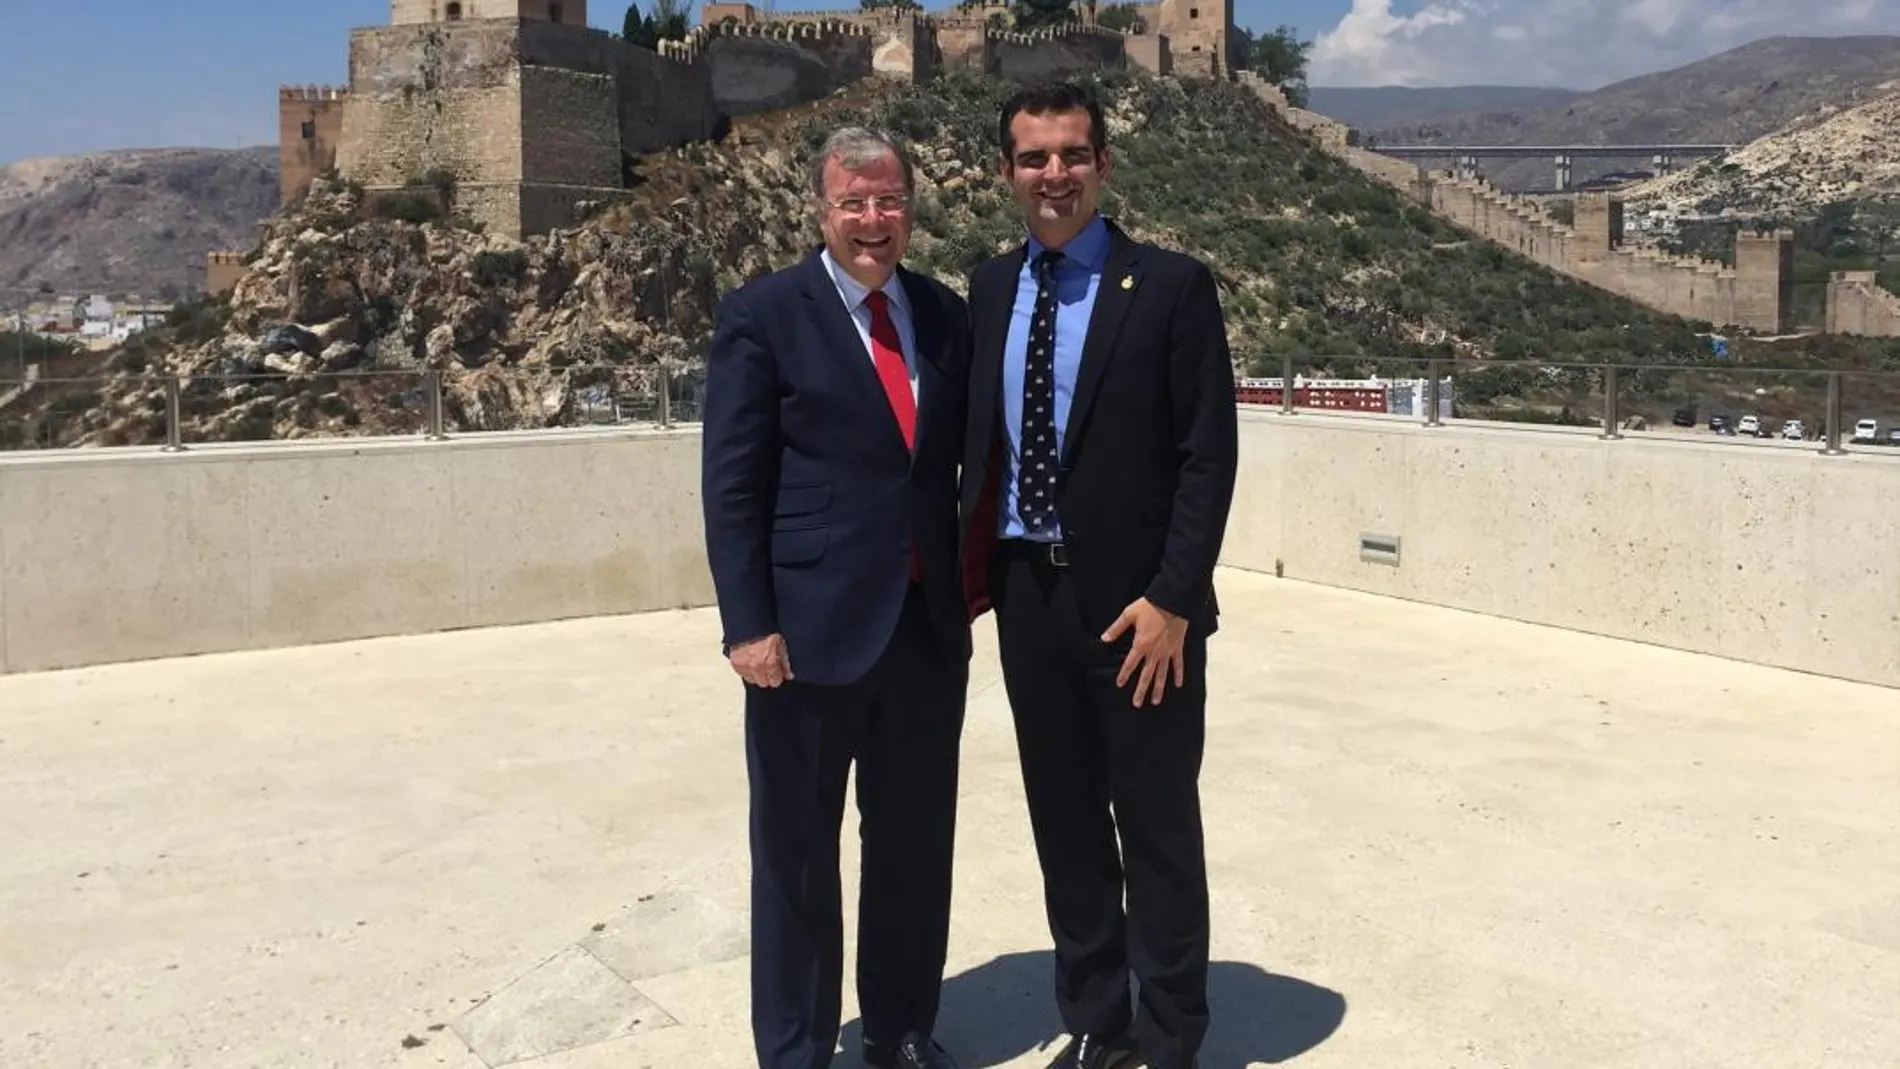 El alcalde de León, Antonio Silván, con el de Almería, Ramón Fernández-Pacheco, visita la Alcazaba de la ciudad / Ayuntamiento de León